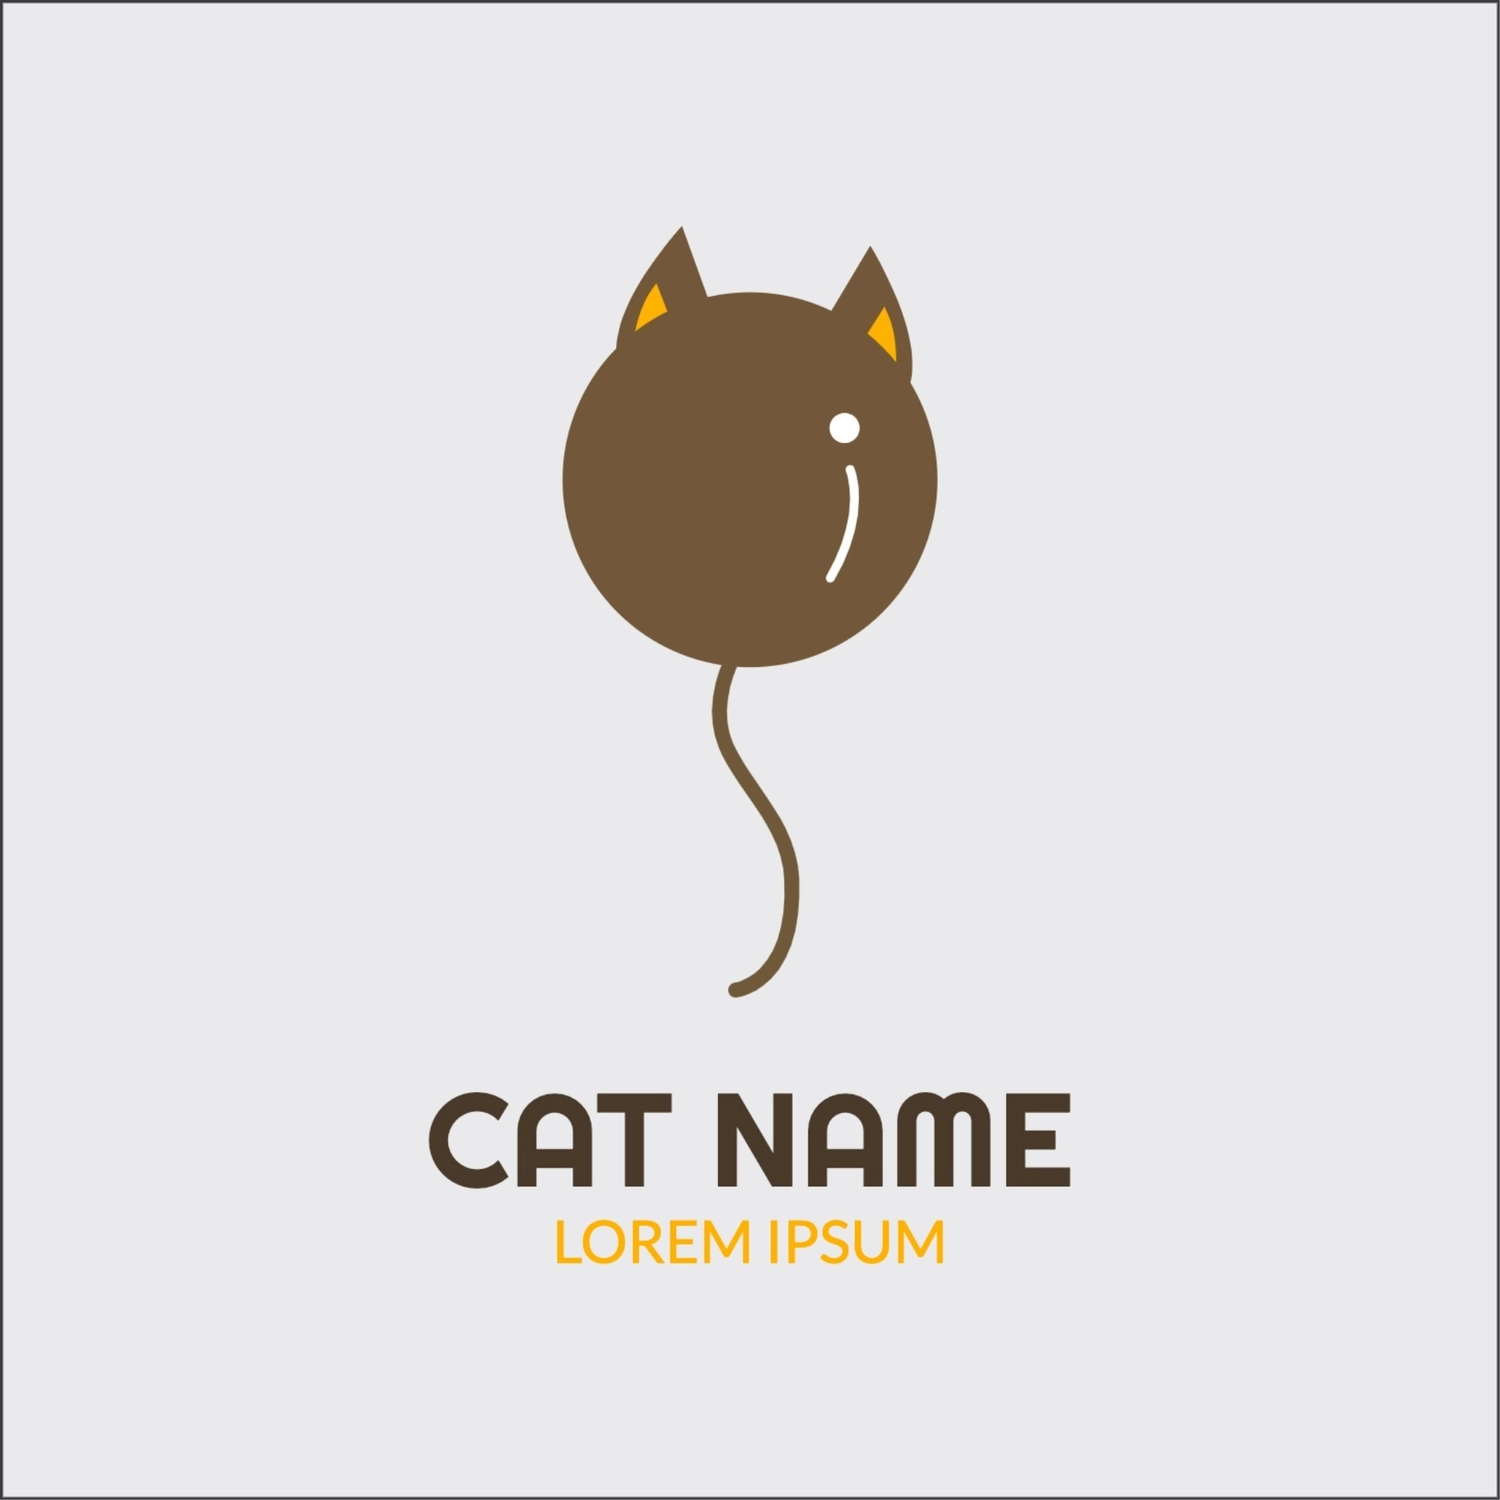 猫型風船のロゴ, おしゃれ, 作成, デザイン, ロゴテンプレート